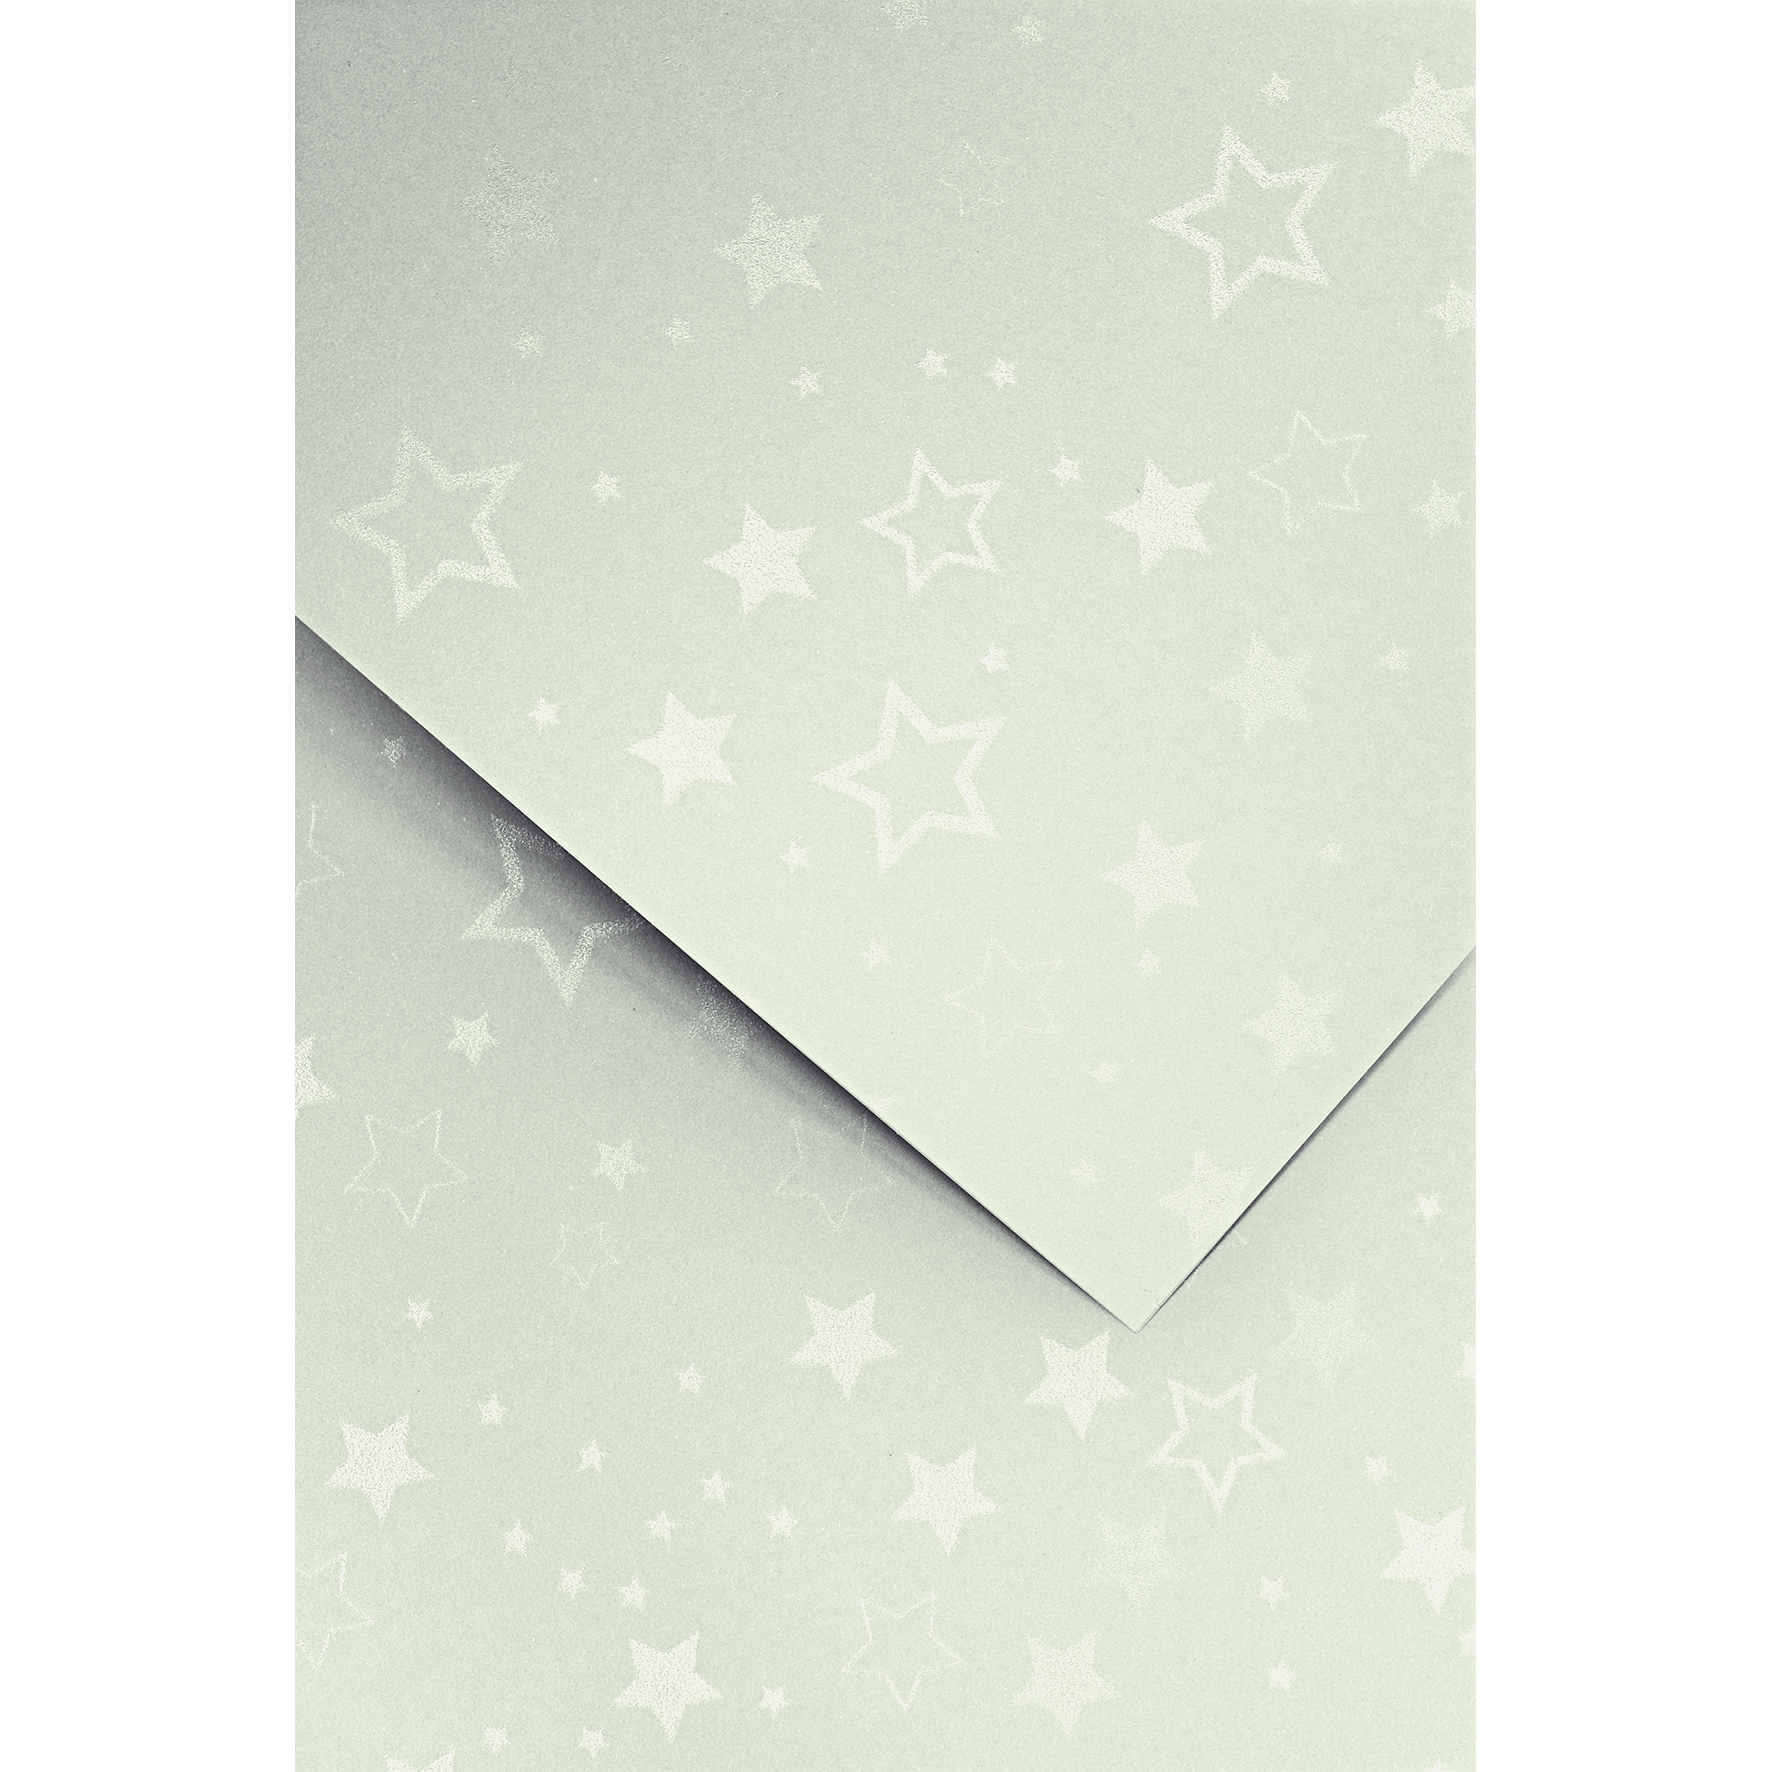 Ozdobný papír Stars, stříbrný, 220g, 20ks